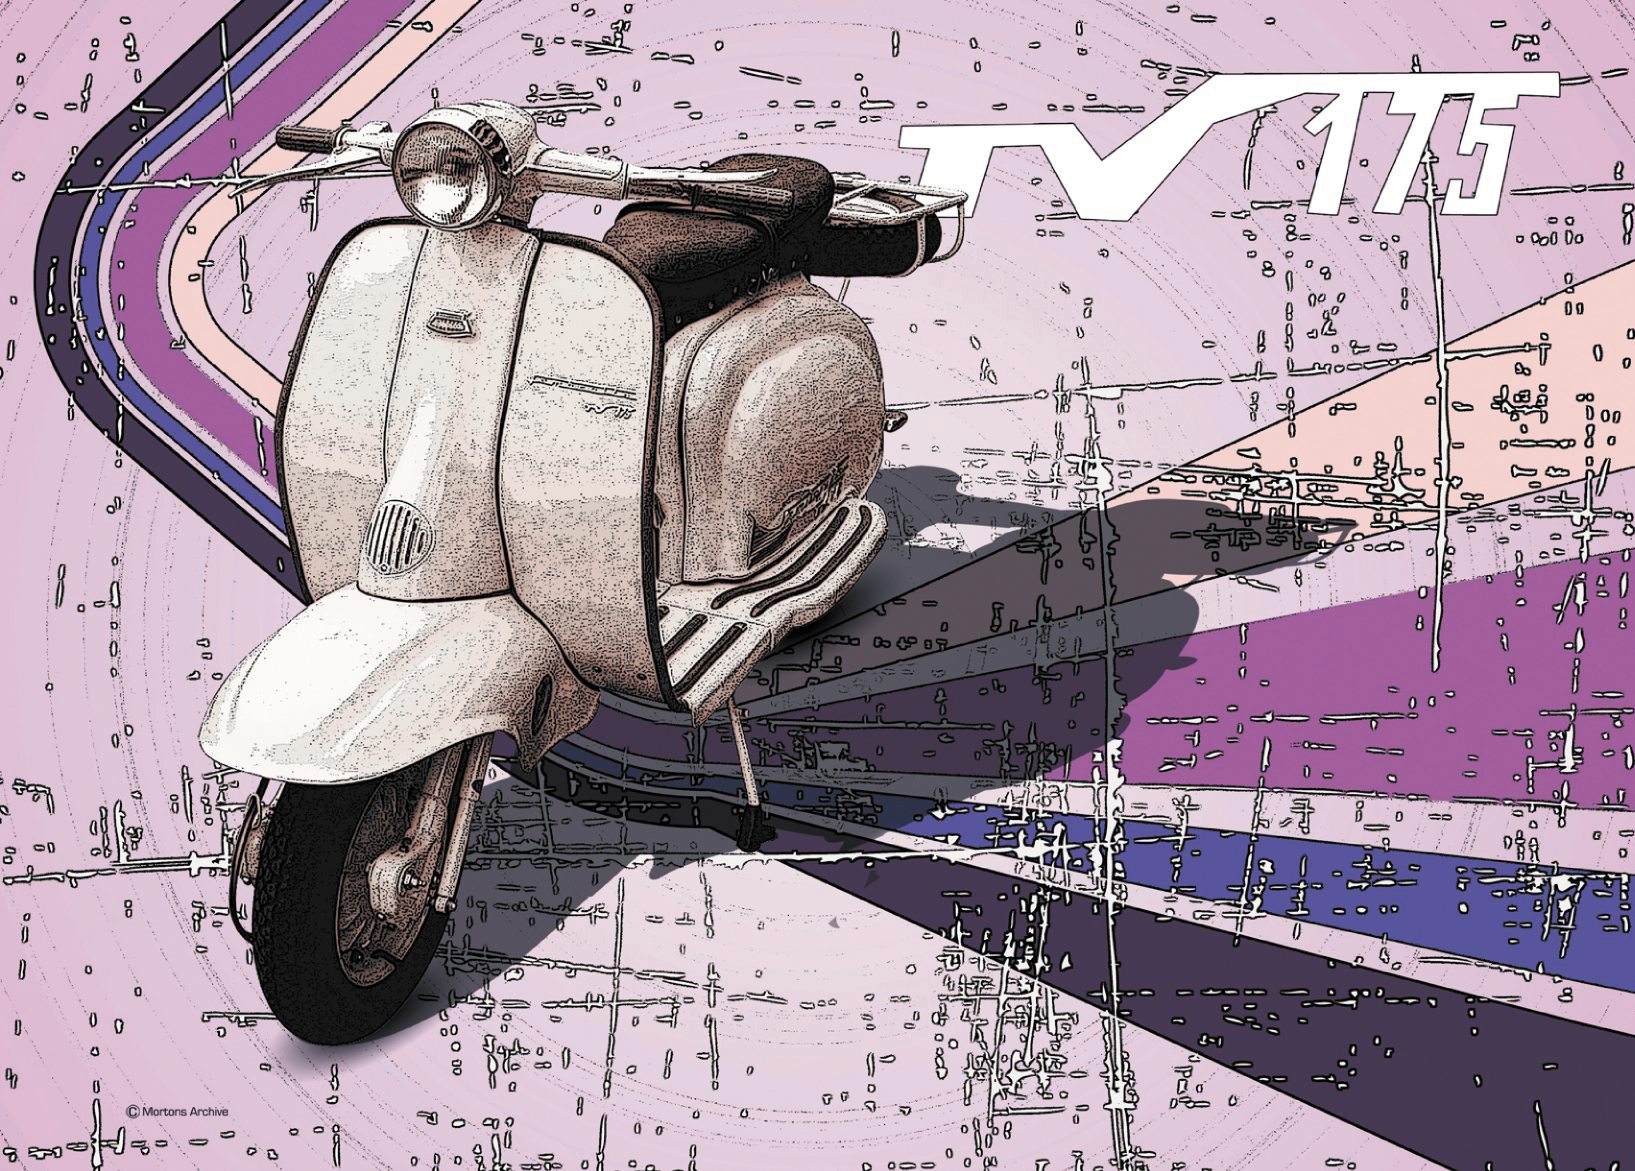 Lambretta Retro Scooter - A3 Poster / Print